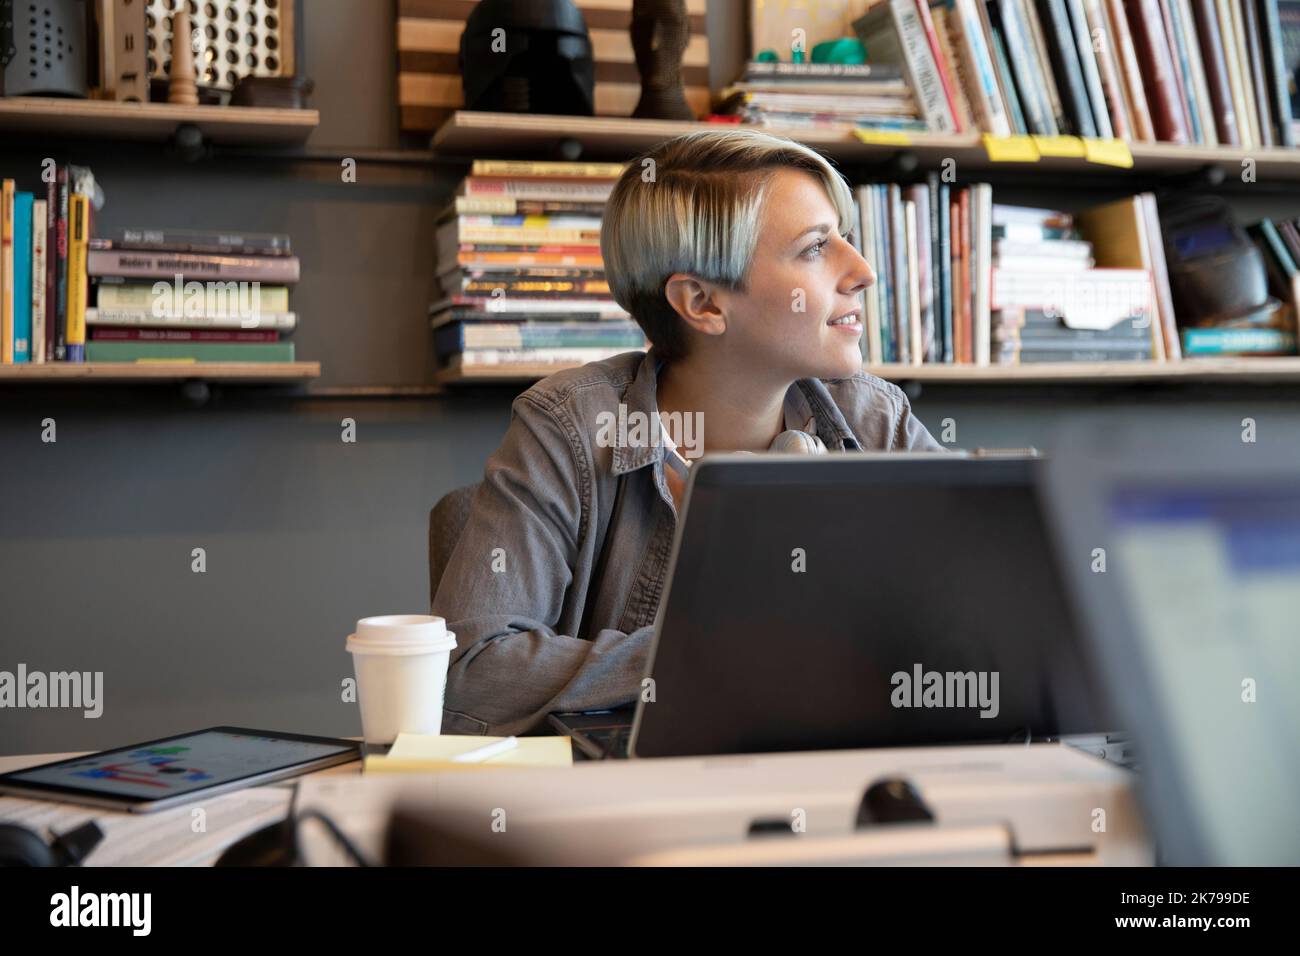 Junge Frau mit kurzen Haaren, die in einem kreativen Büro arbeitet Stockfoto